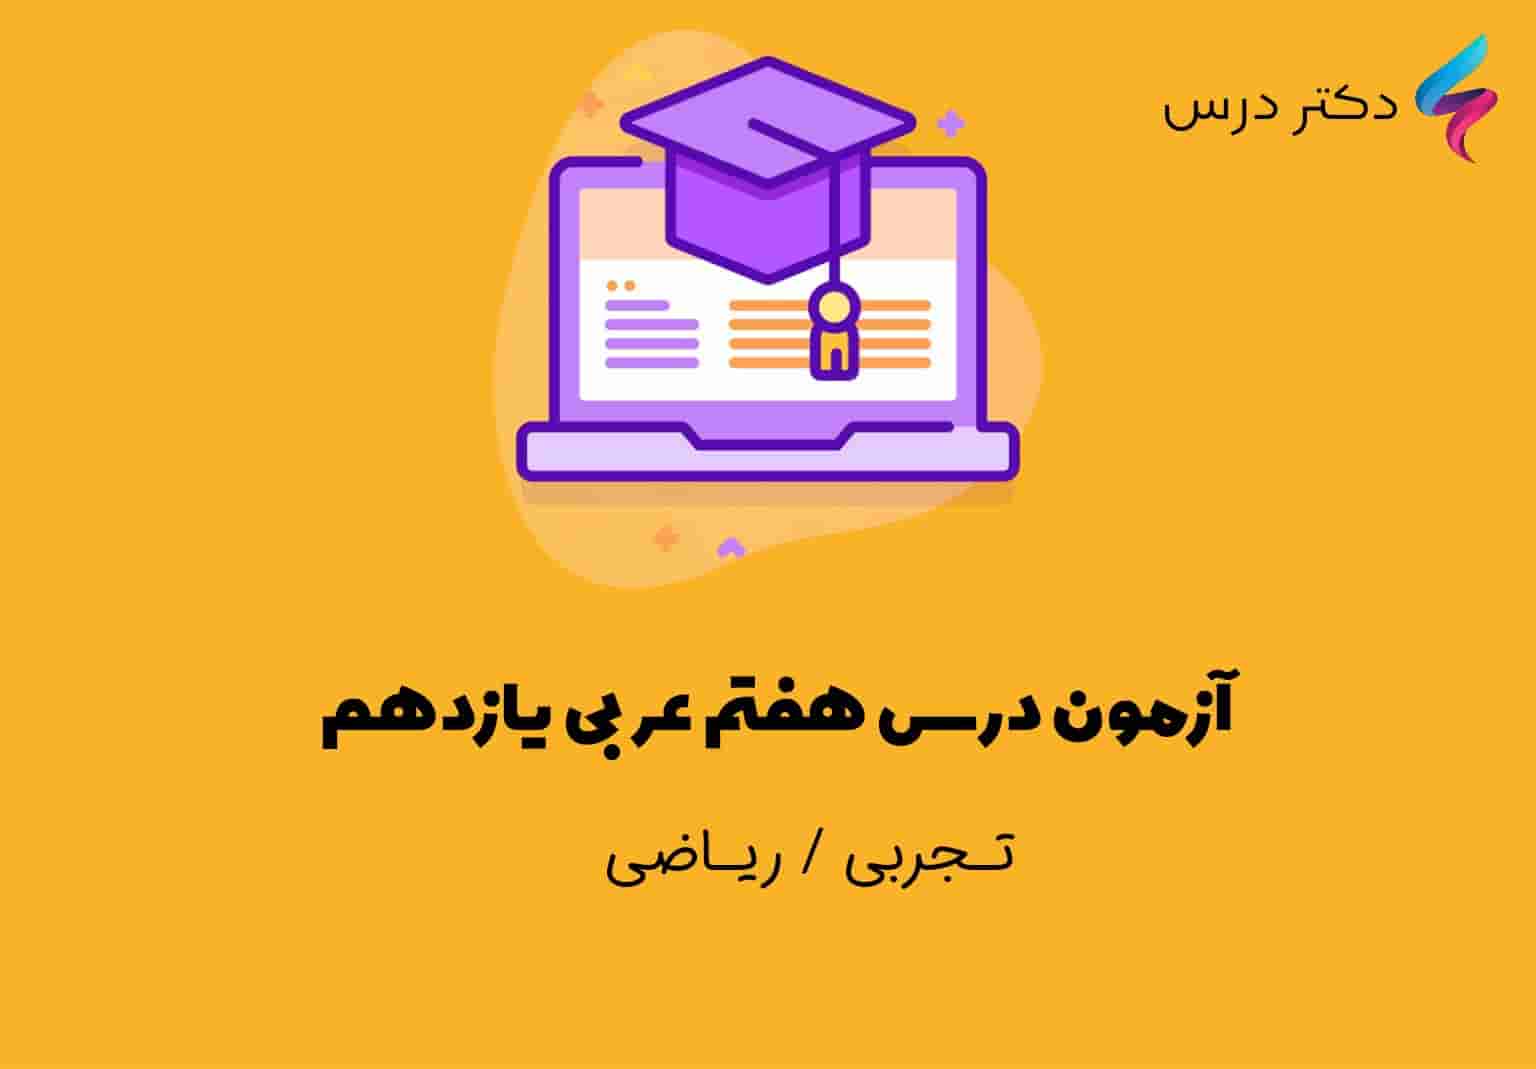 آزمون درس هفتم عربی یازدهم که شامل نمونه سوال و تست های چهار گزینه ای سطح بالا و کنکوری همراه به جواب می باشد